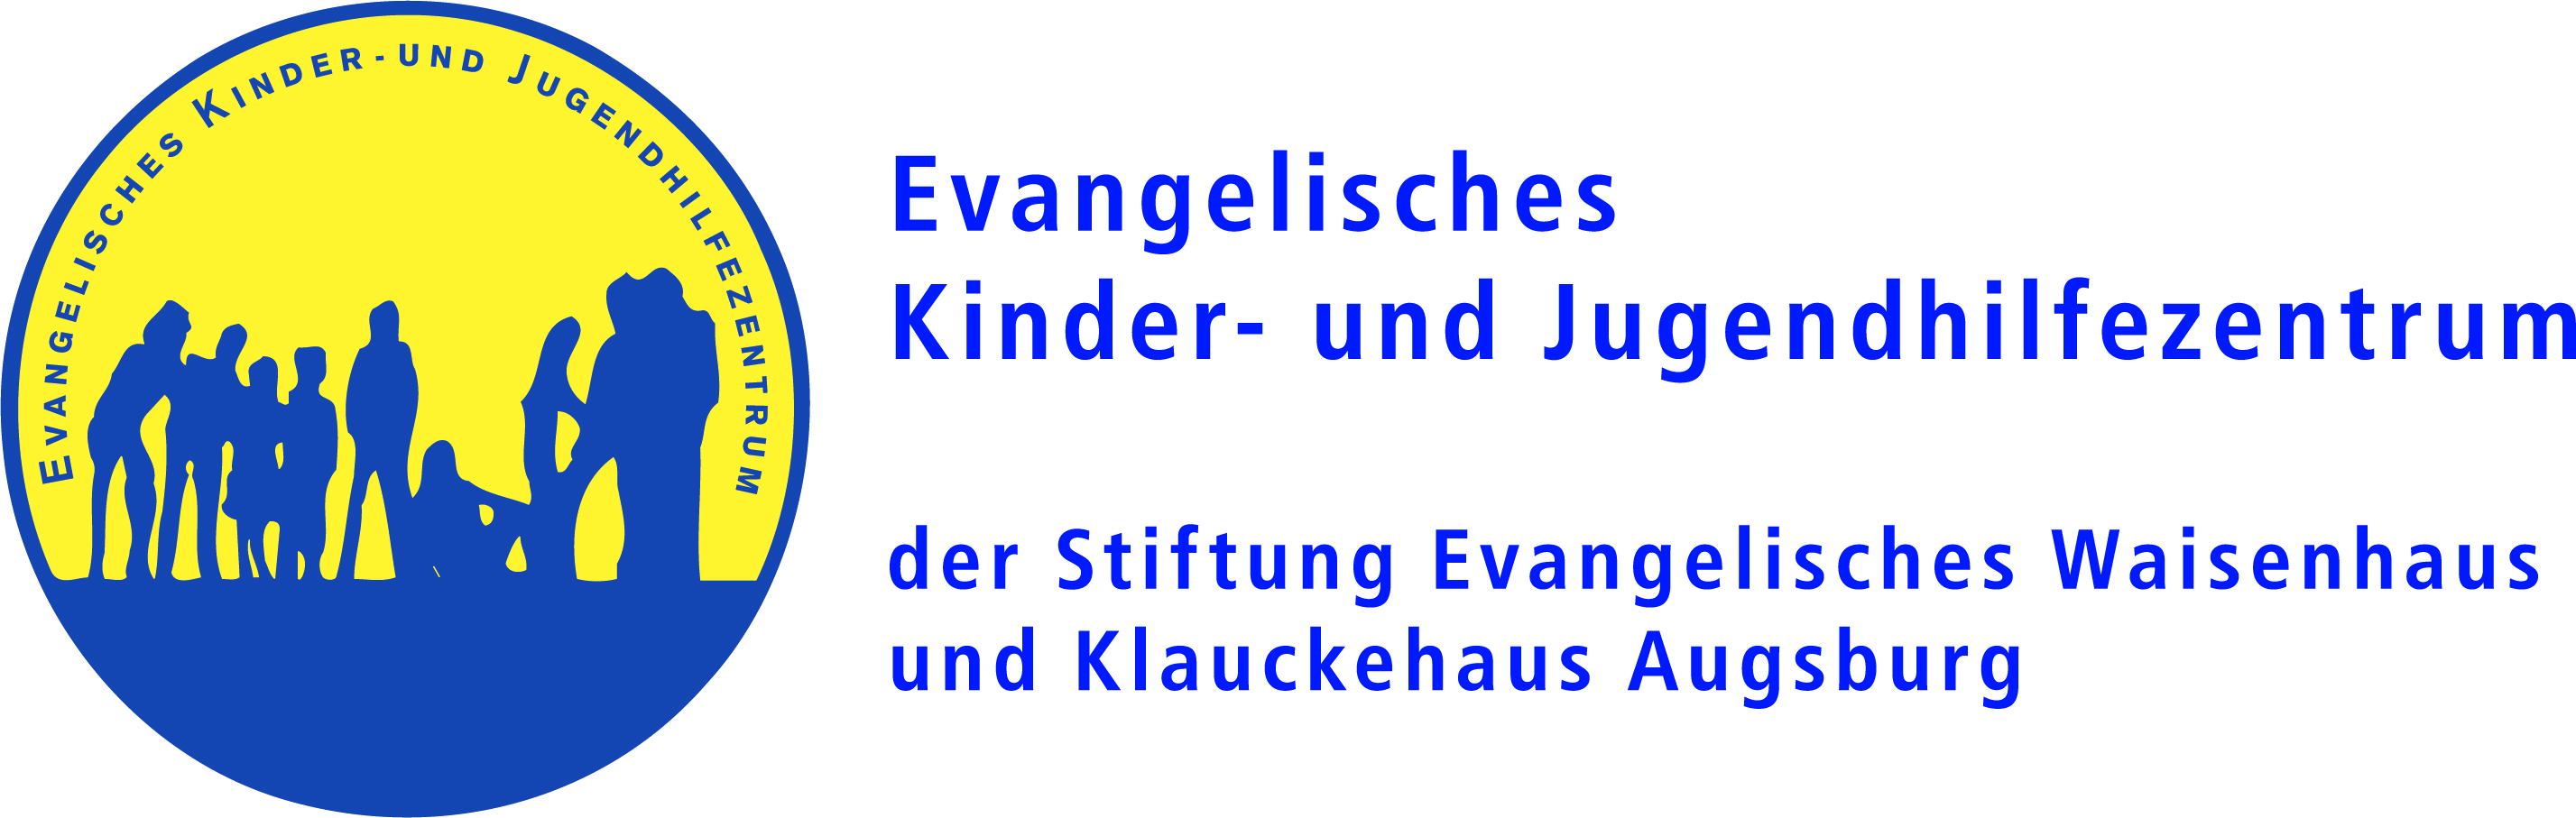 Evangelisches Kinder- und Jugendhilfezentrum Augsburg